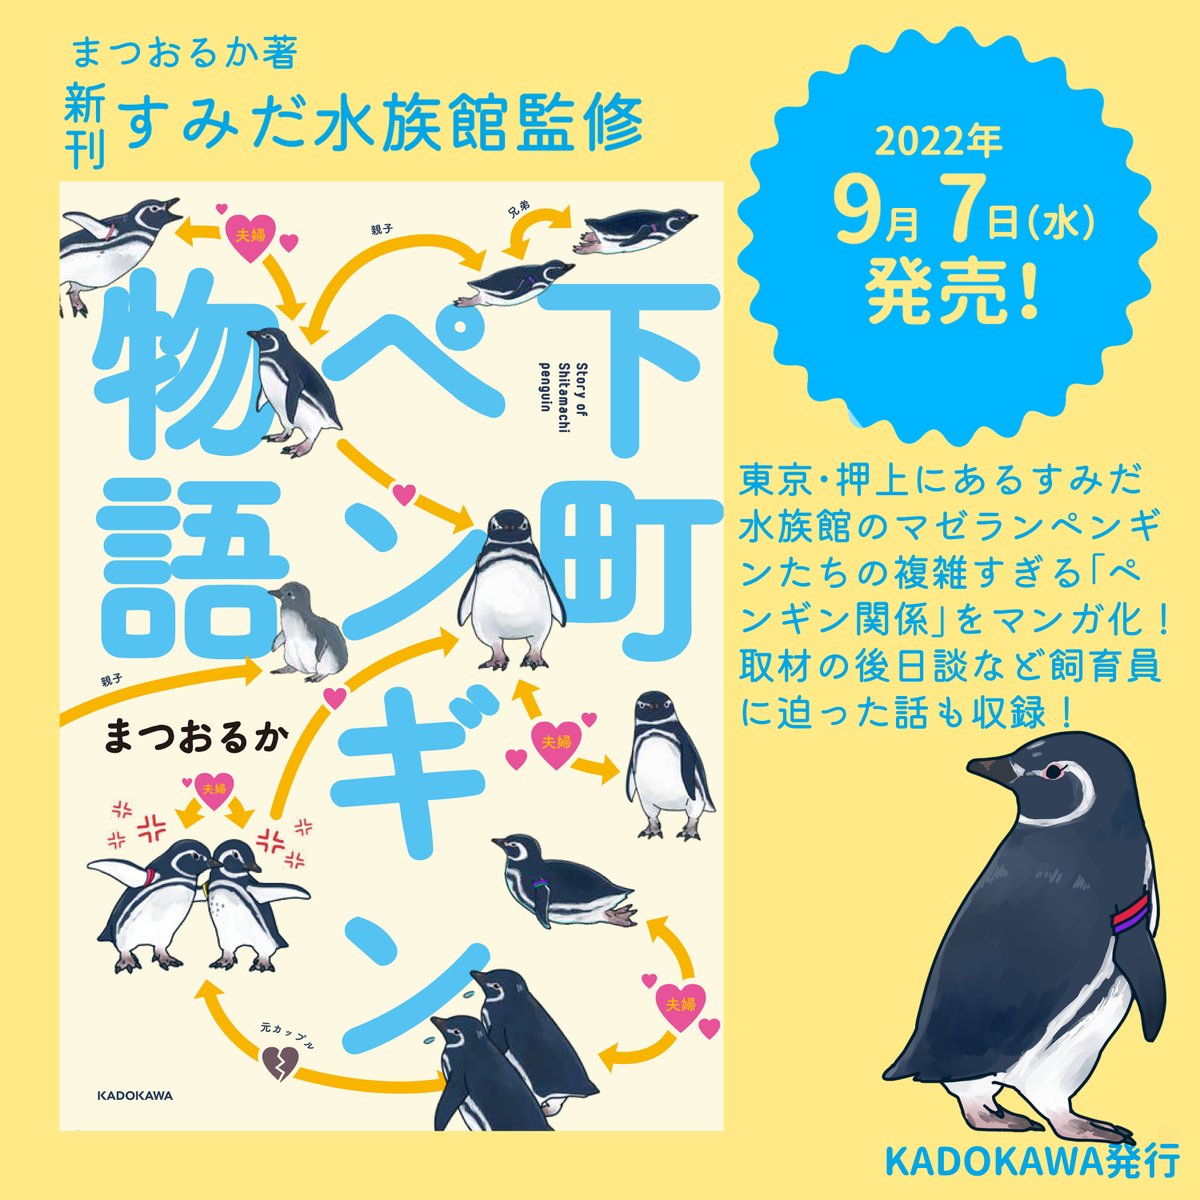 「下町ペンギン物語」の見本が届きました～!嬉しい!可愛い!ちゃんとマンガになってた～(そらそう)
来週の7日発売です～! 